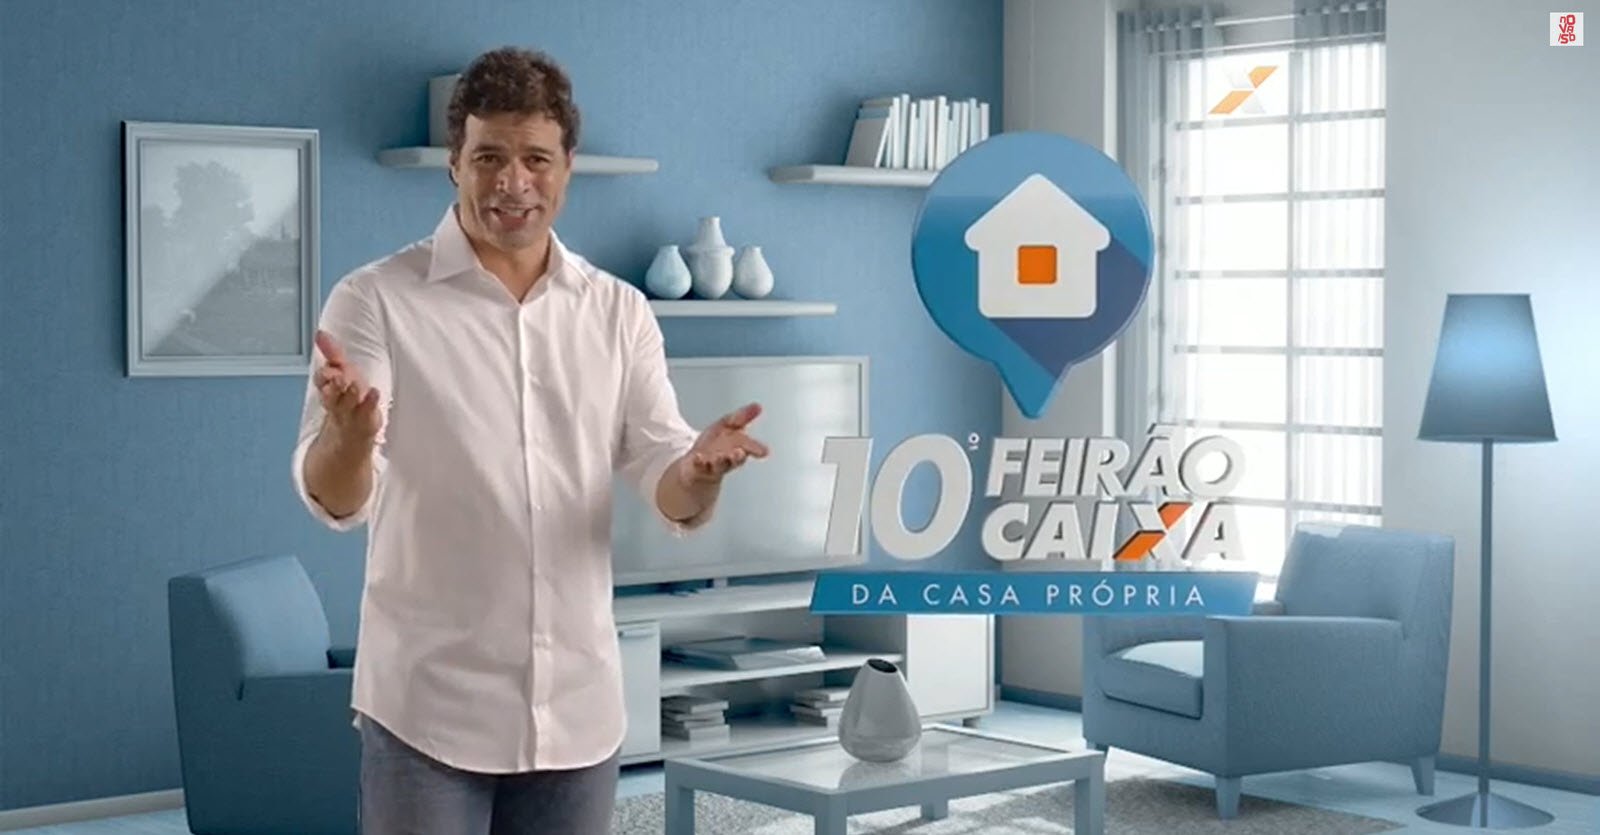 Featured image for “10º Feirão da CAIXA”